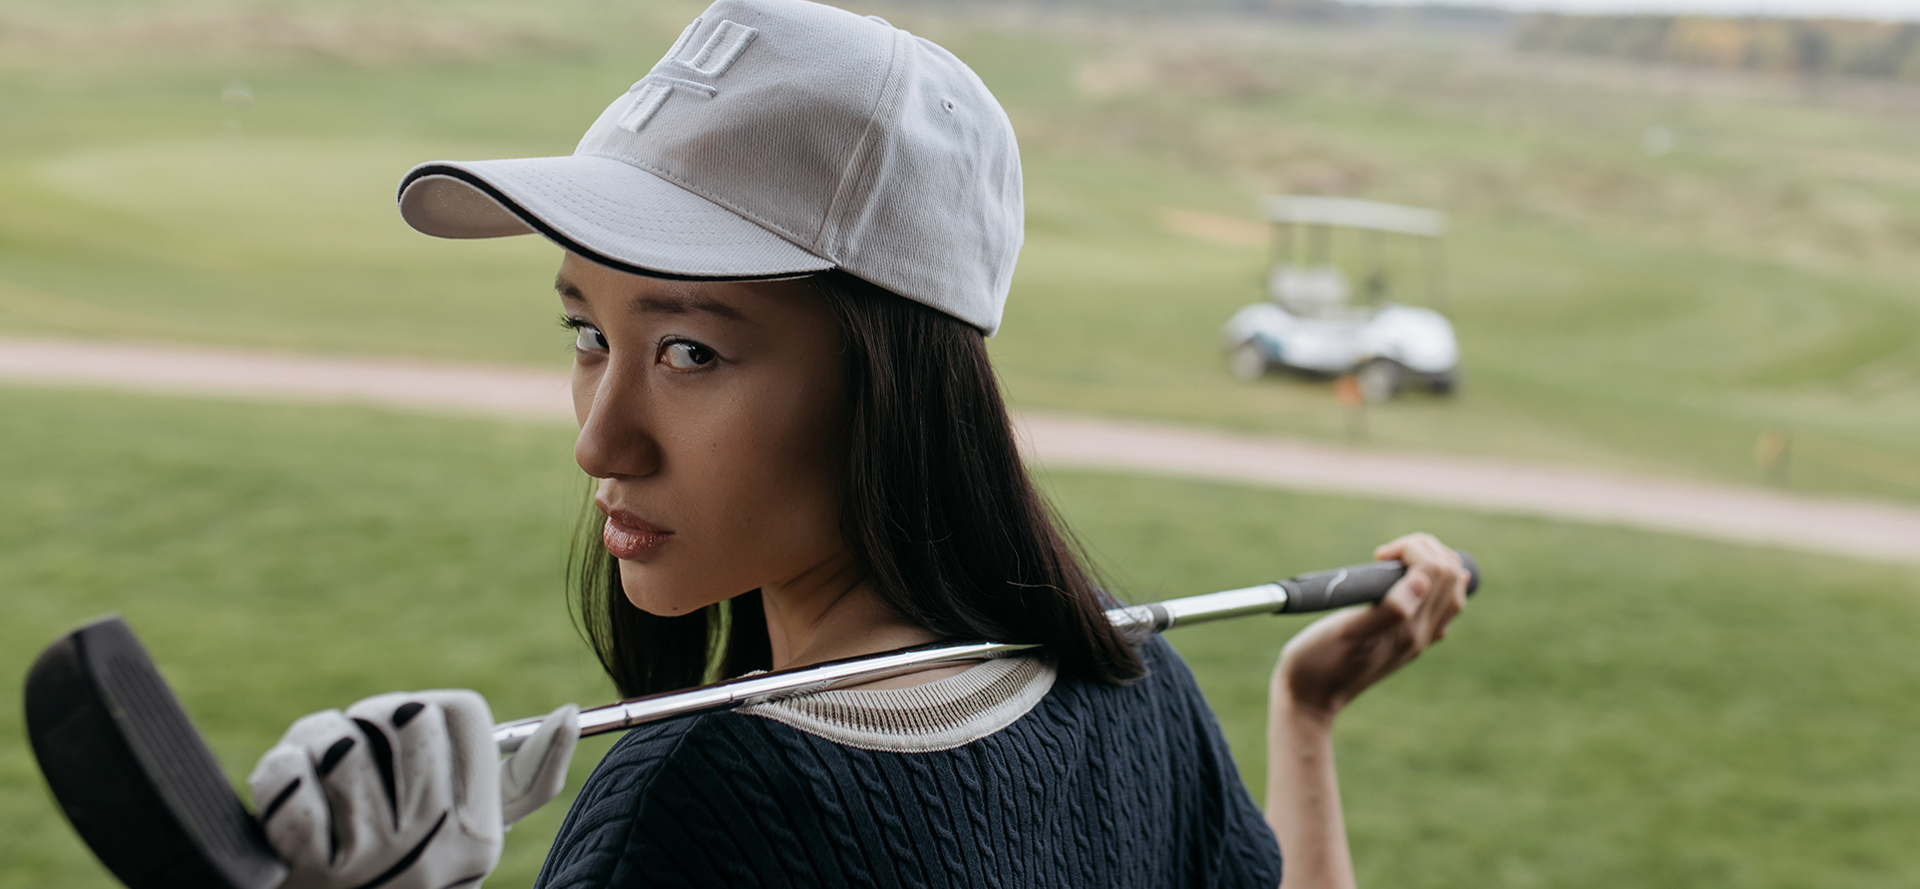 Single female golfer posing with a golf club.